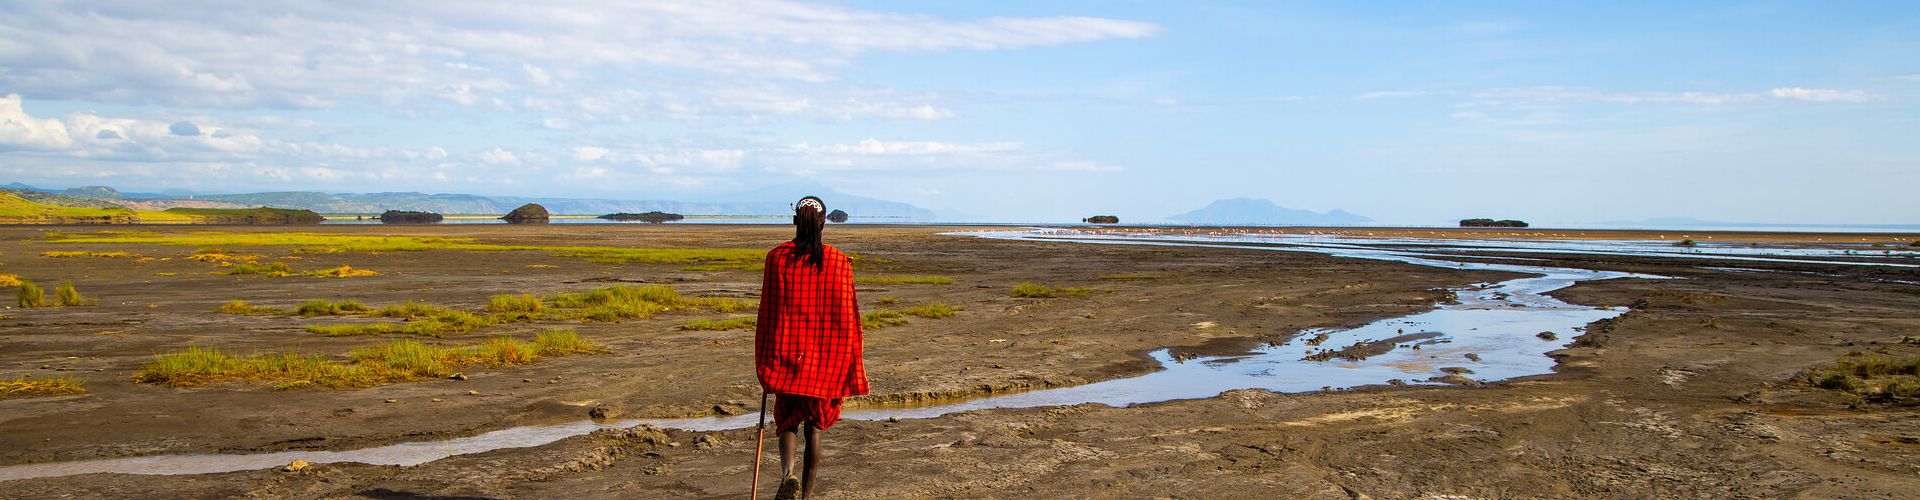 Scoprite la cultura tradizionale Maasai nell'area del Lago Natron con i nostri tour Safari in Tanzania